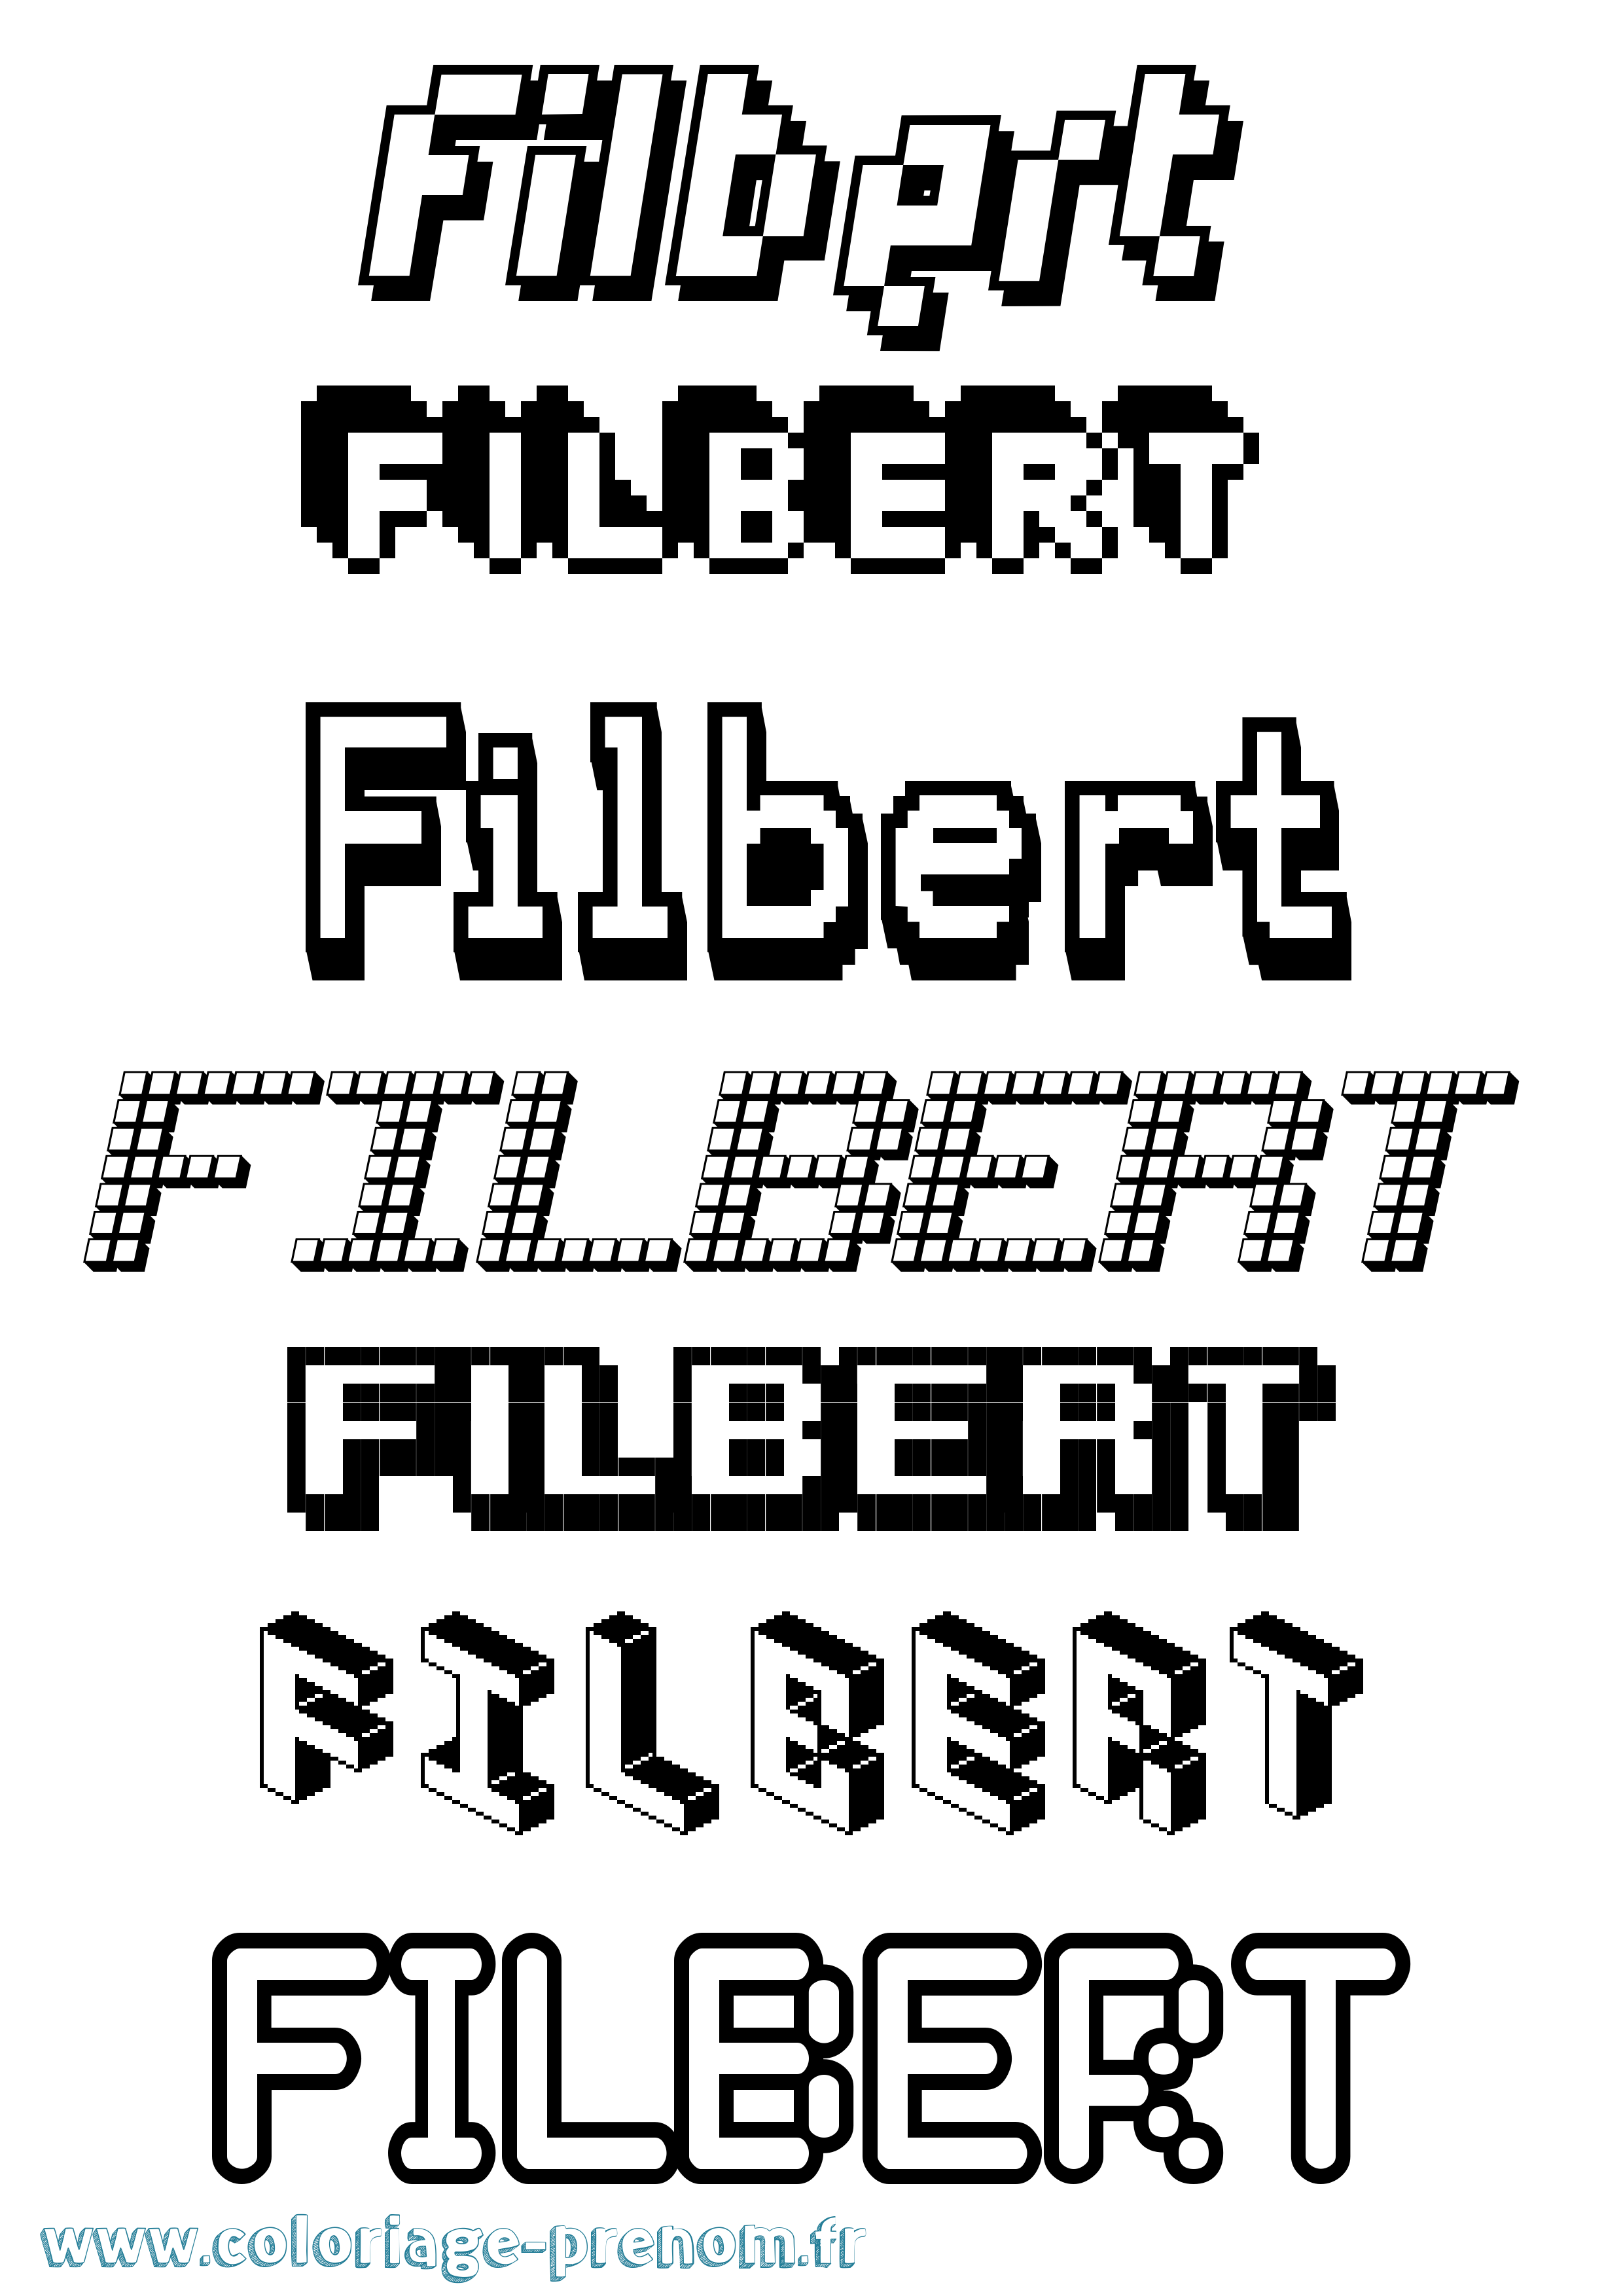 Coloriage prénom Filbert Pixel